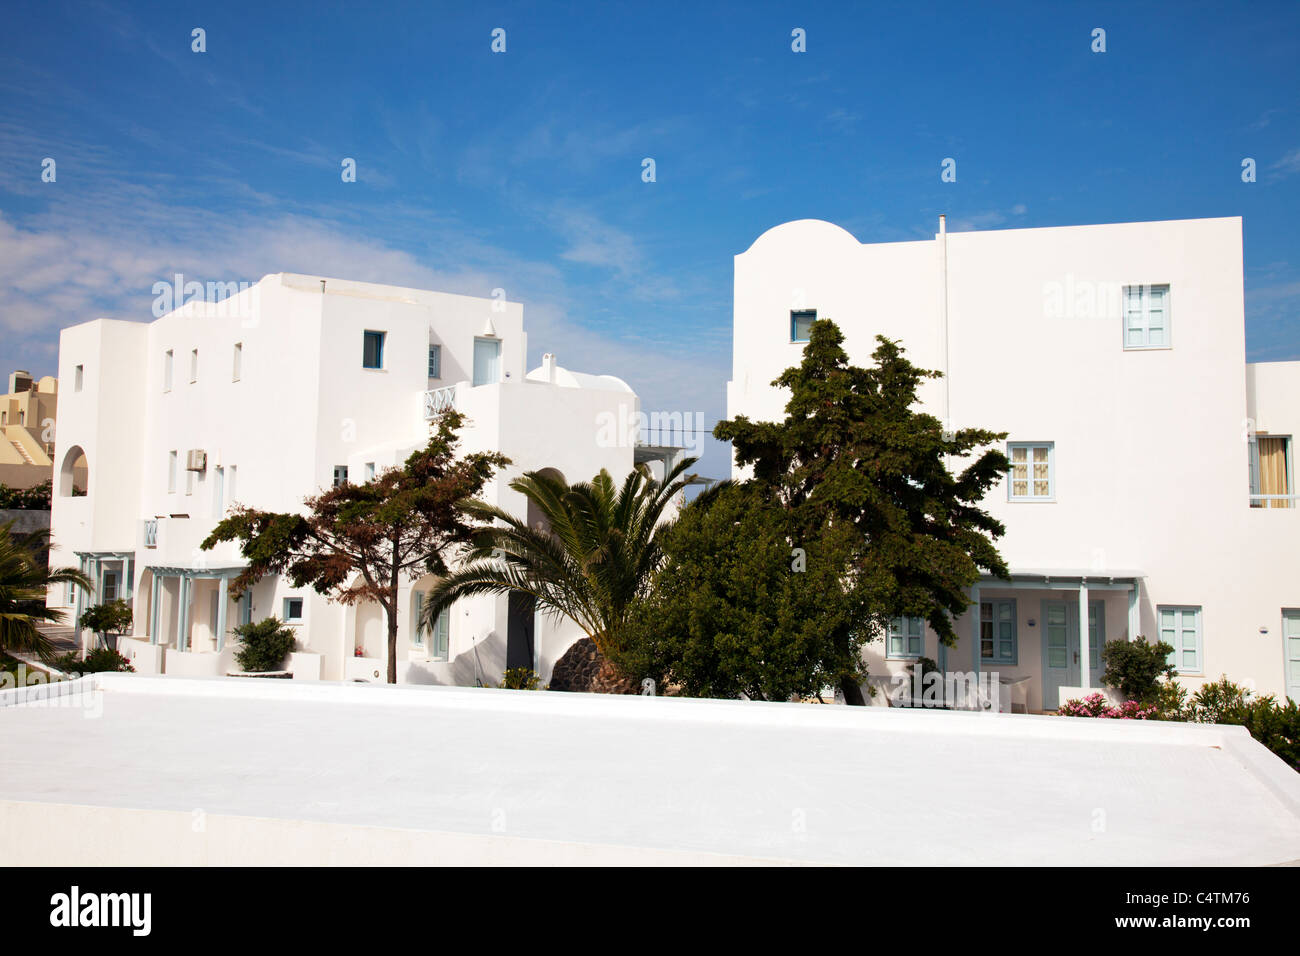 La magnifique île grecque de Santorin El Greco complexe de vacances typique des bâtiments blanc contre le ciel bleu en Grèce Banque D'Images